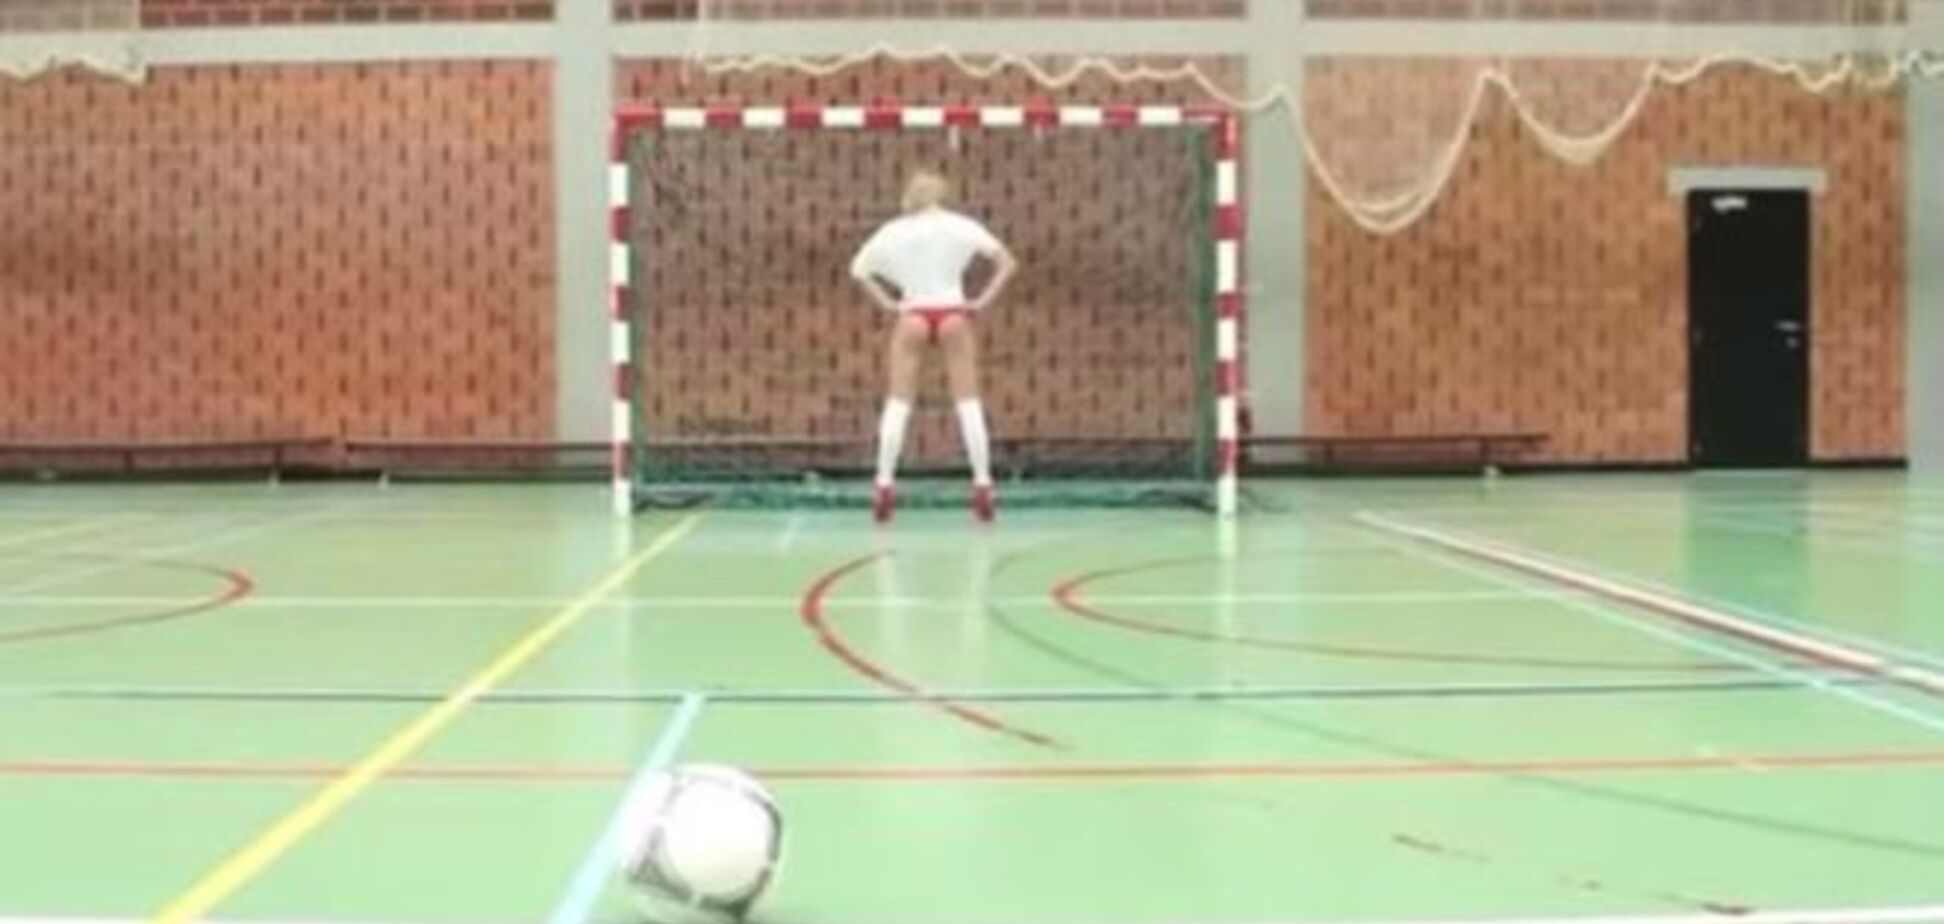 В Бельгии сыграли в эротический футбол: опубликовано видео